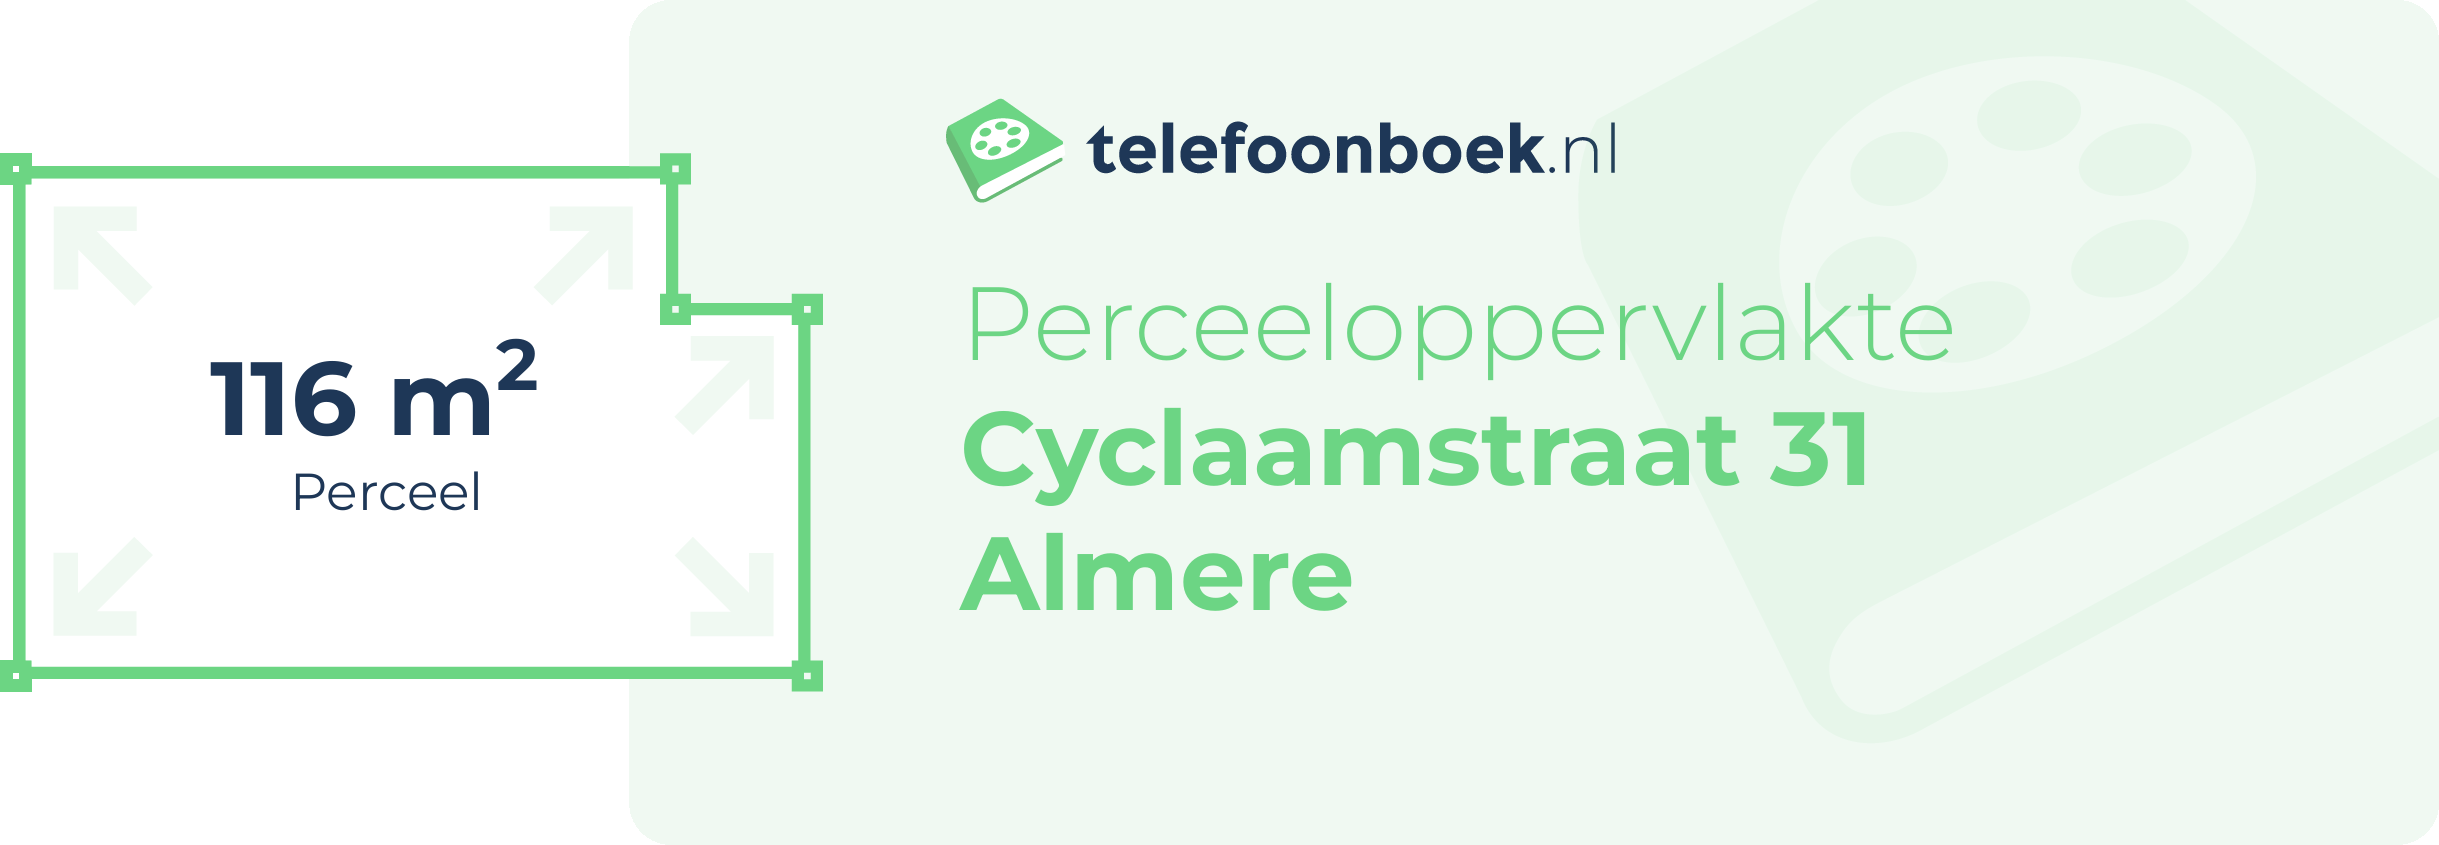 Perceeloppervlakte Cyclaamstraat 31 Almere